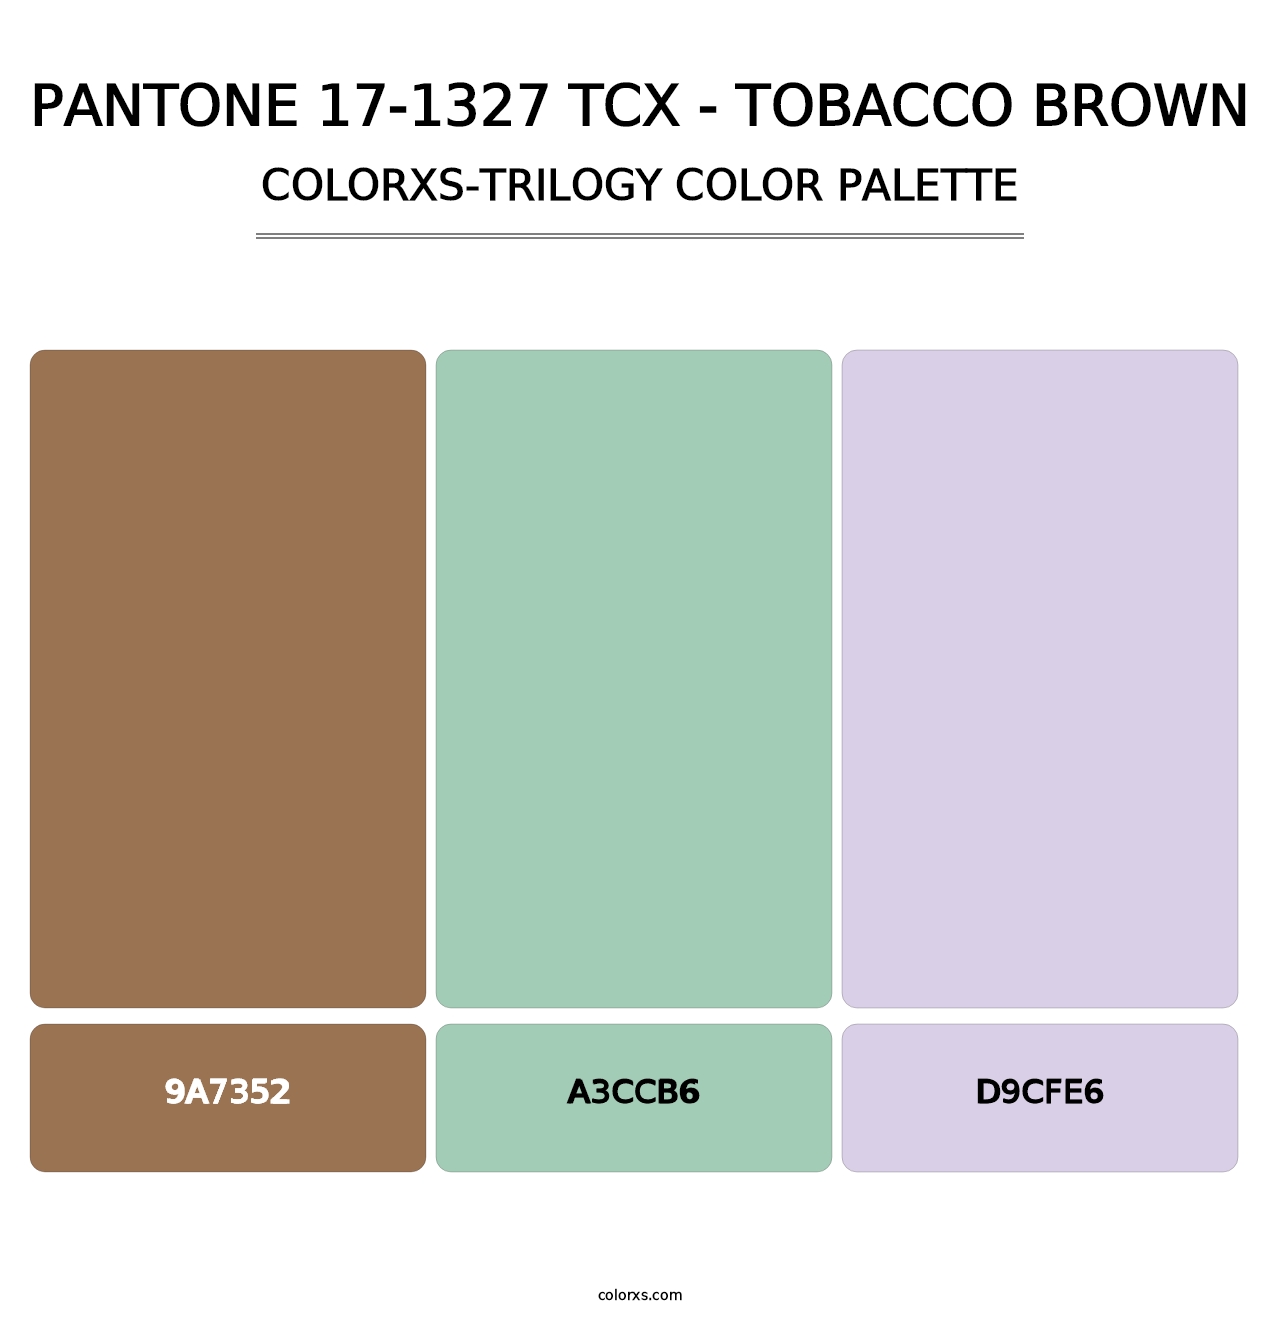 PANTONE 17-1327 TCX - Tobacco Brown - Colorxs Trilogy Palette